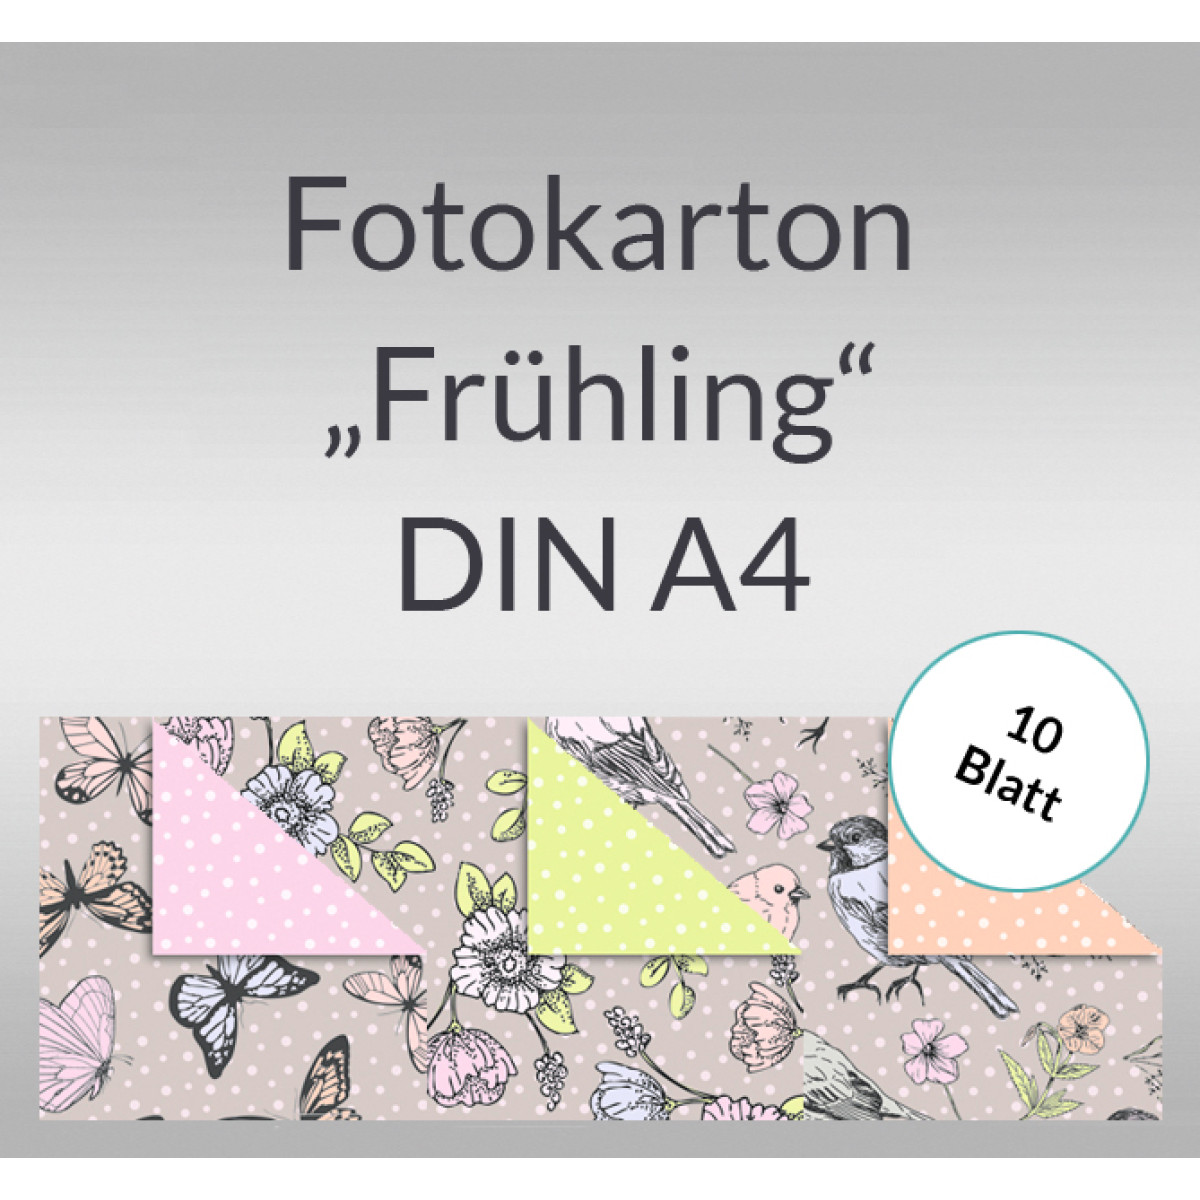 Fotokarton "Frühling" DIN A4 - 10 Blatt